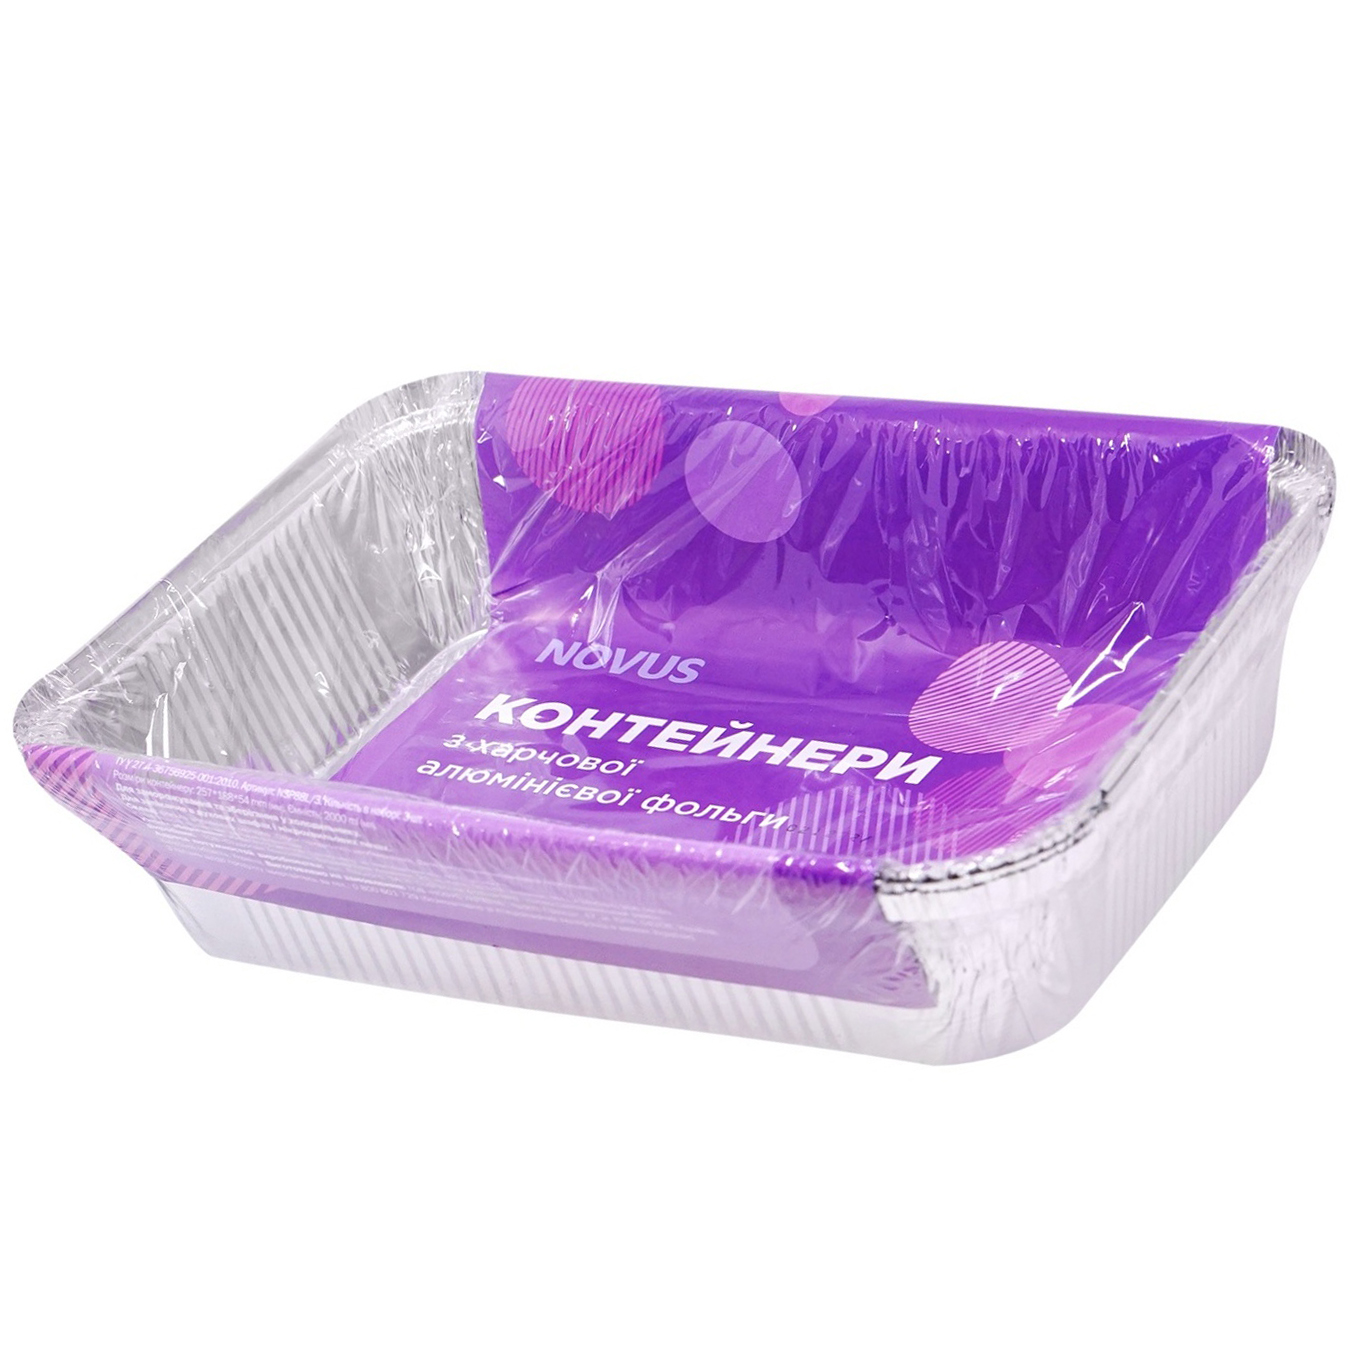 NOVUS Rectangular Food Foil Container 3pc 2l